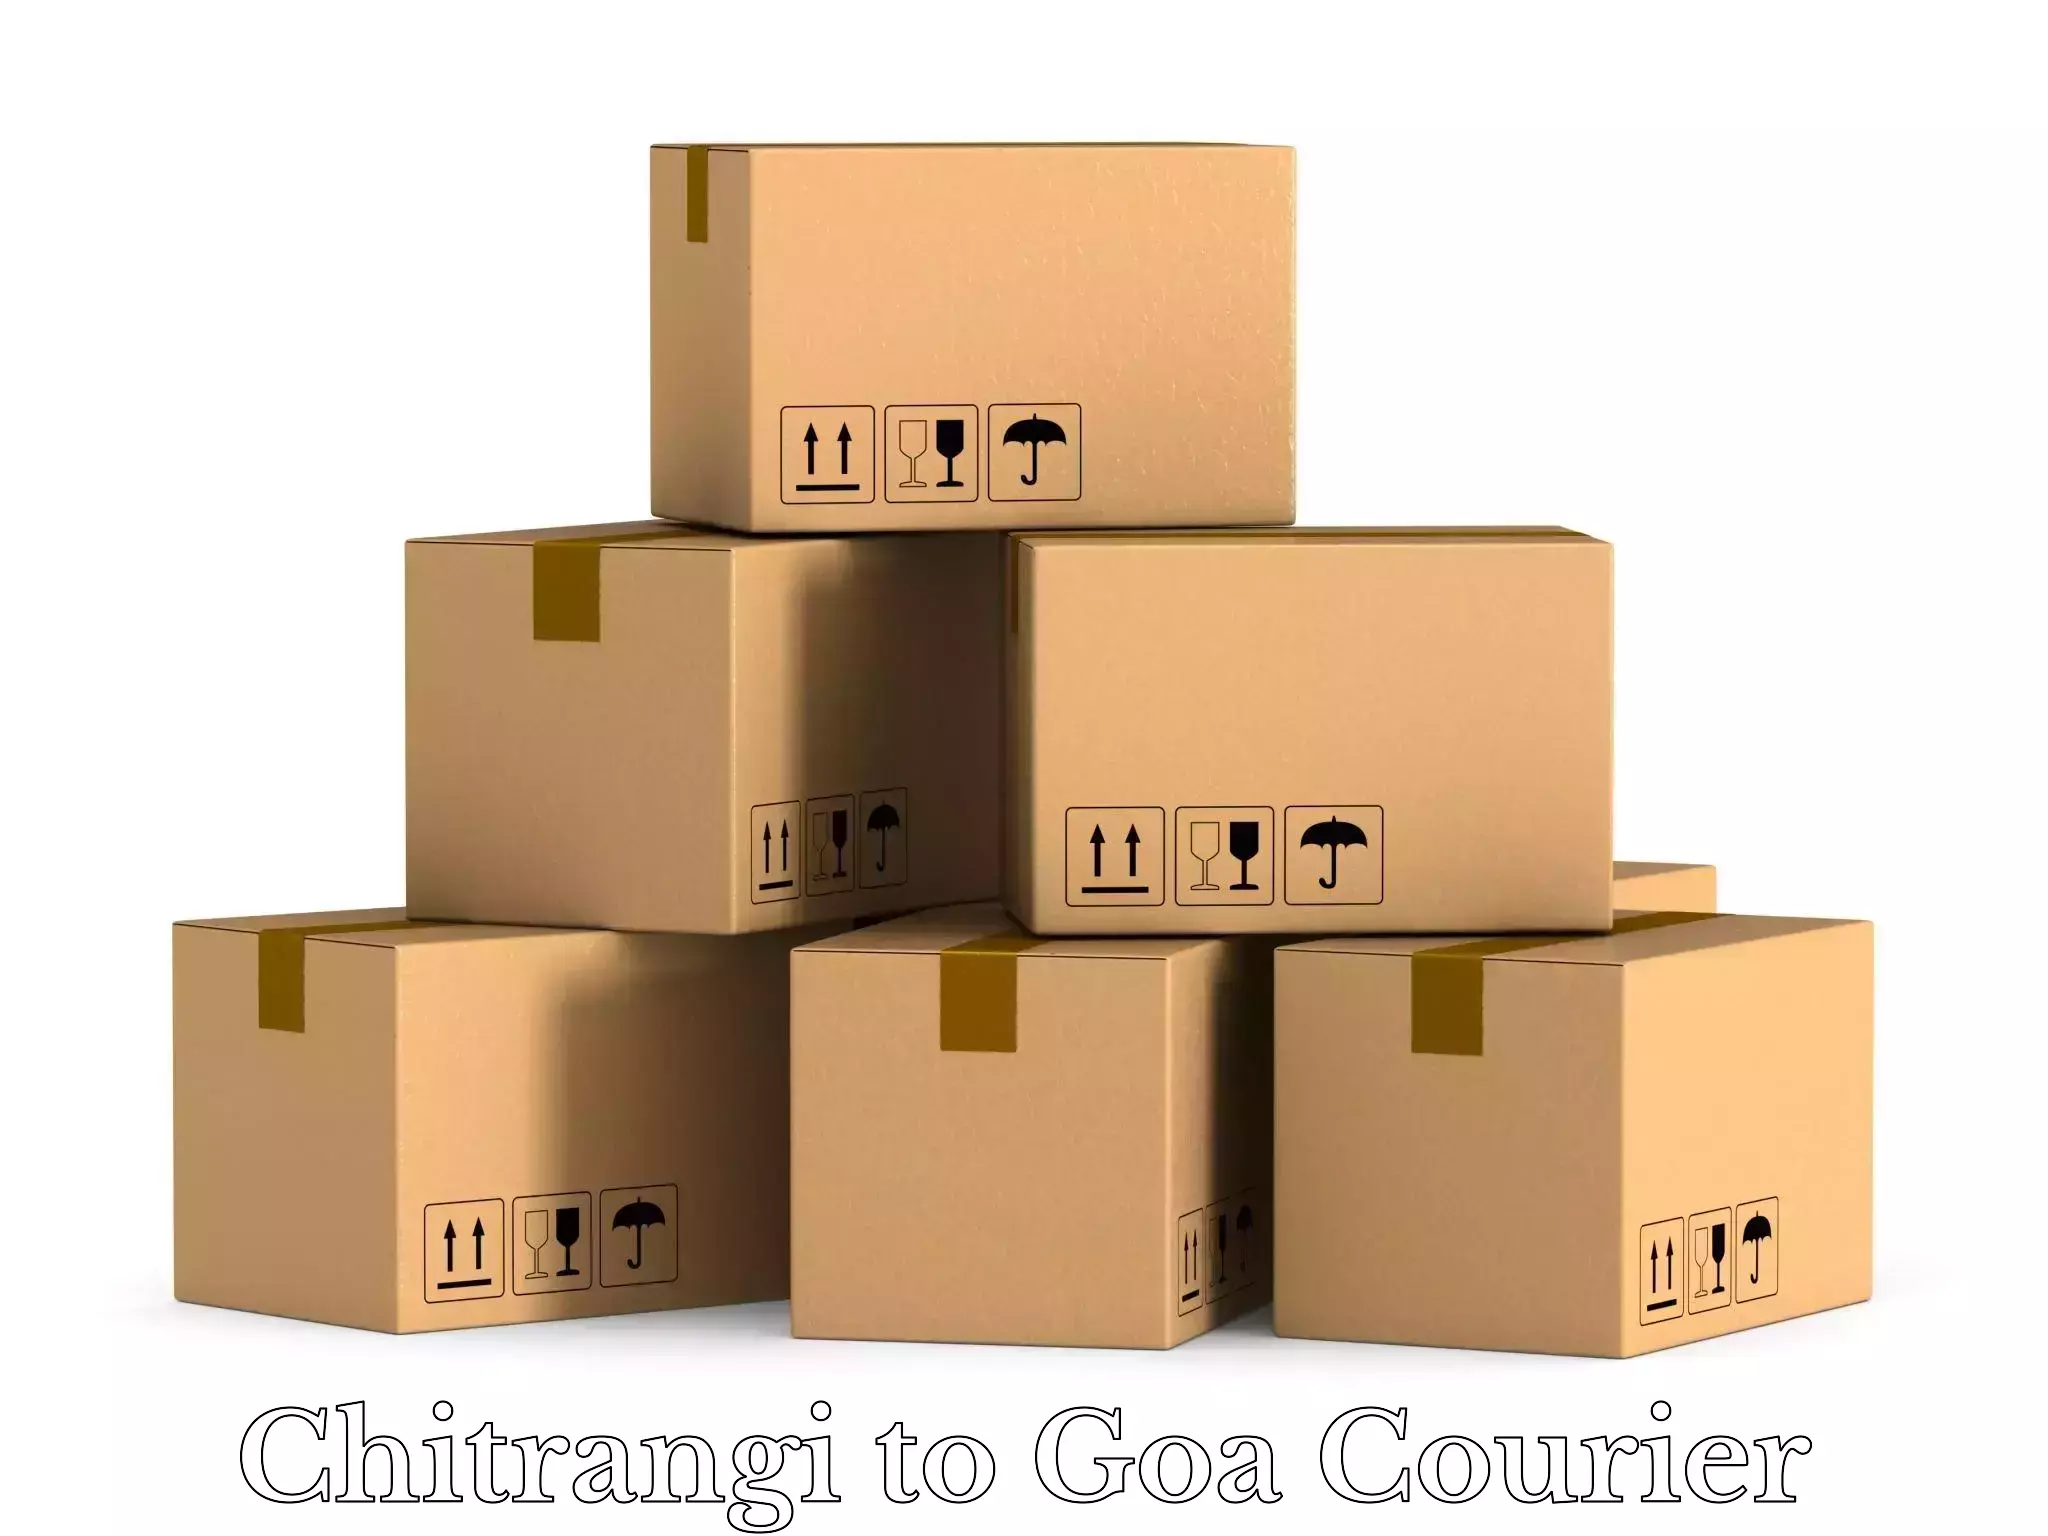 Luggage transport service Chitrangi to South Goa